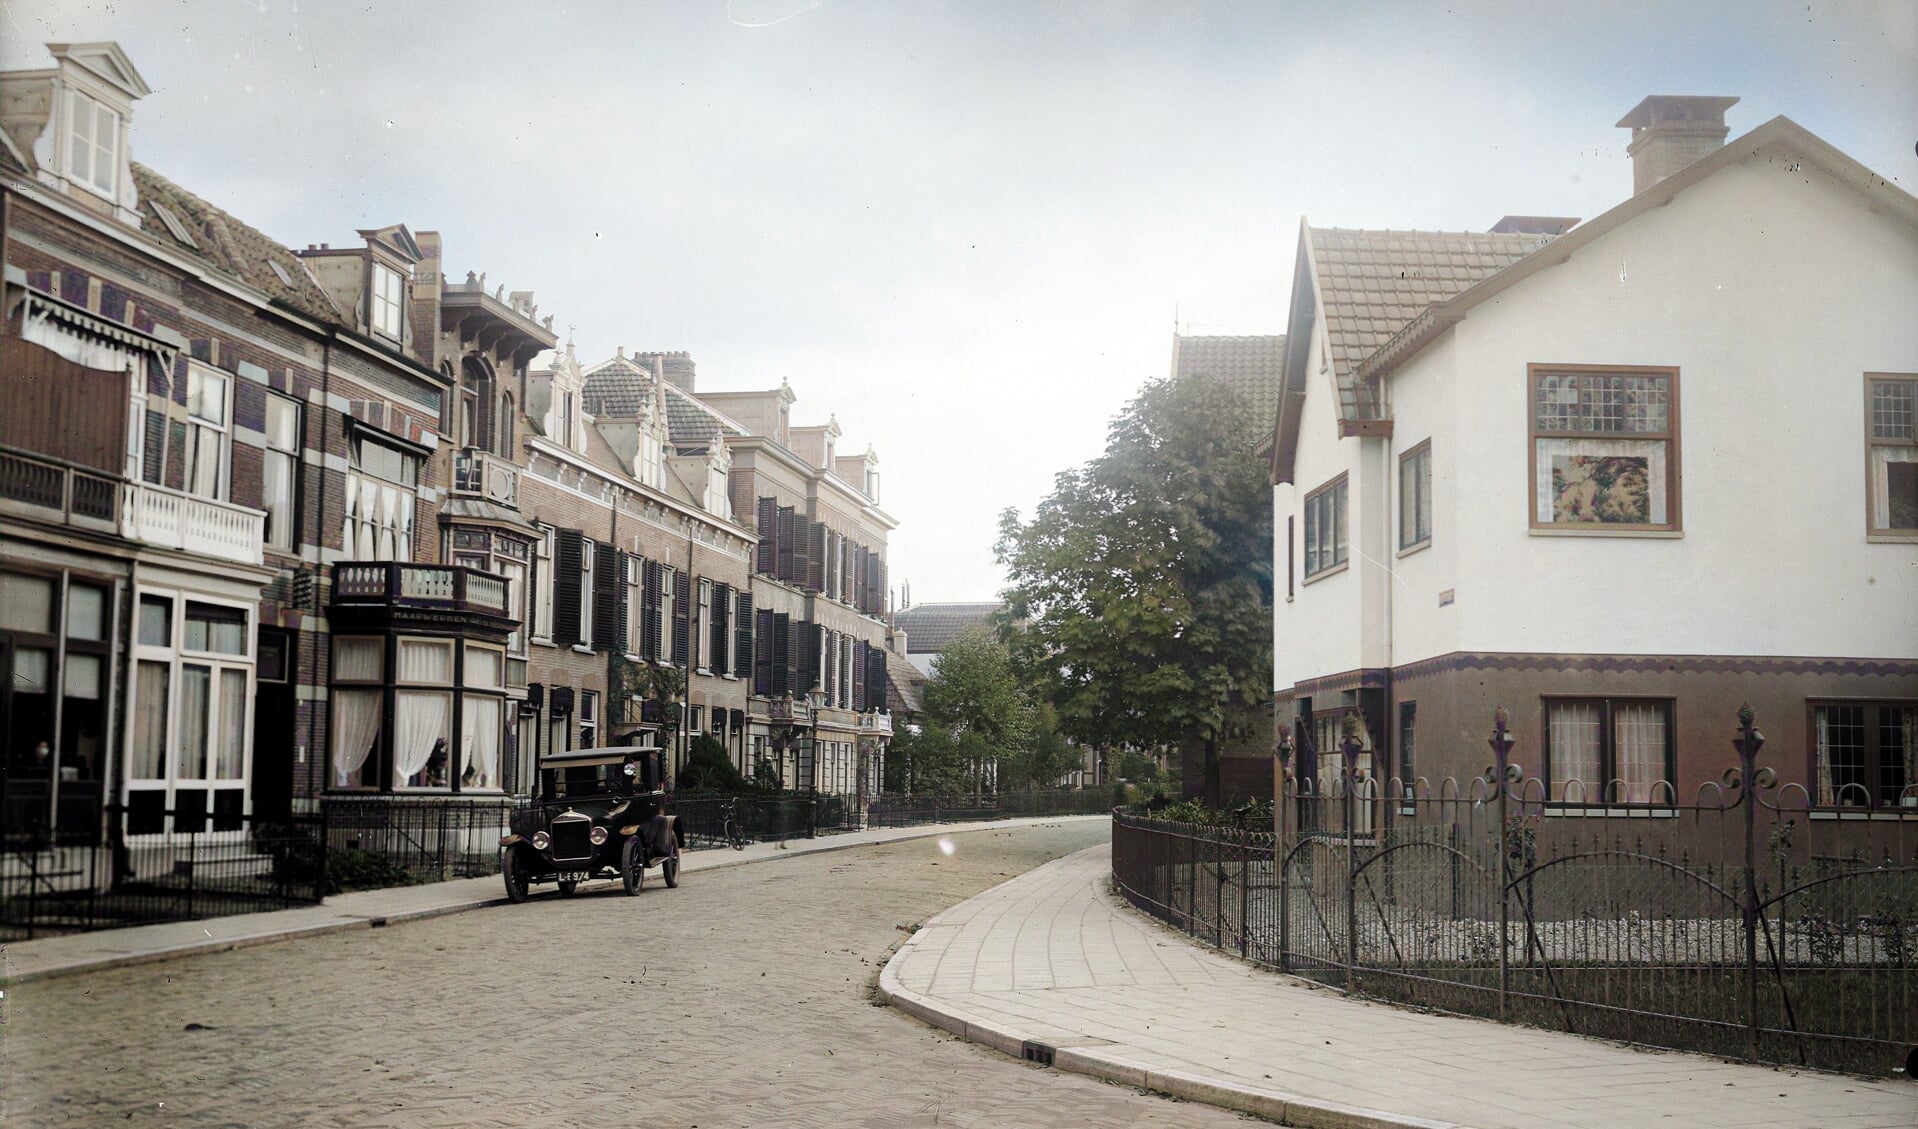  De weg tussen het Julianaplein en de Stationsstraat heette vroeger de Watersteeg.  